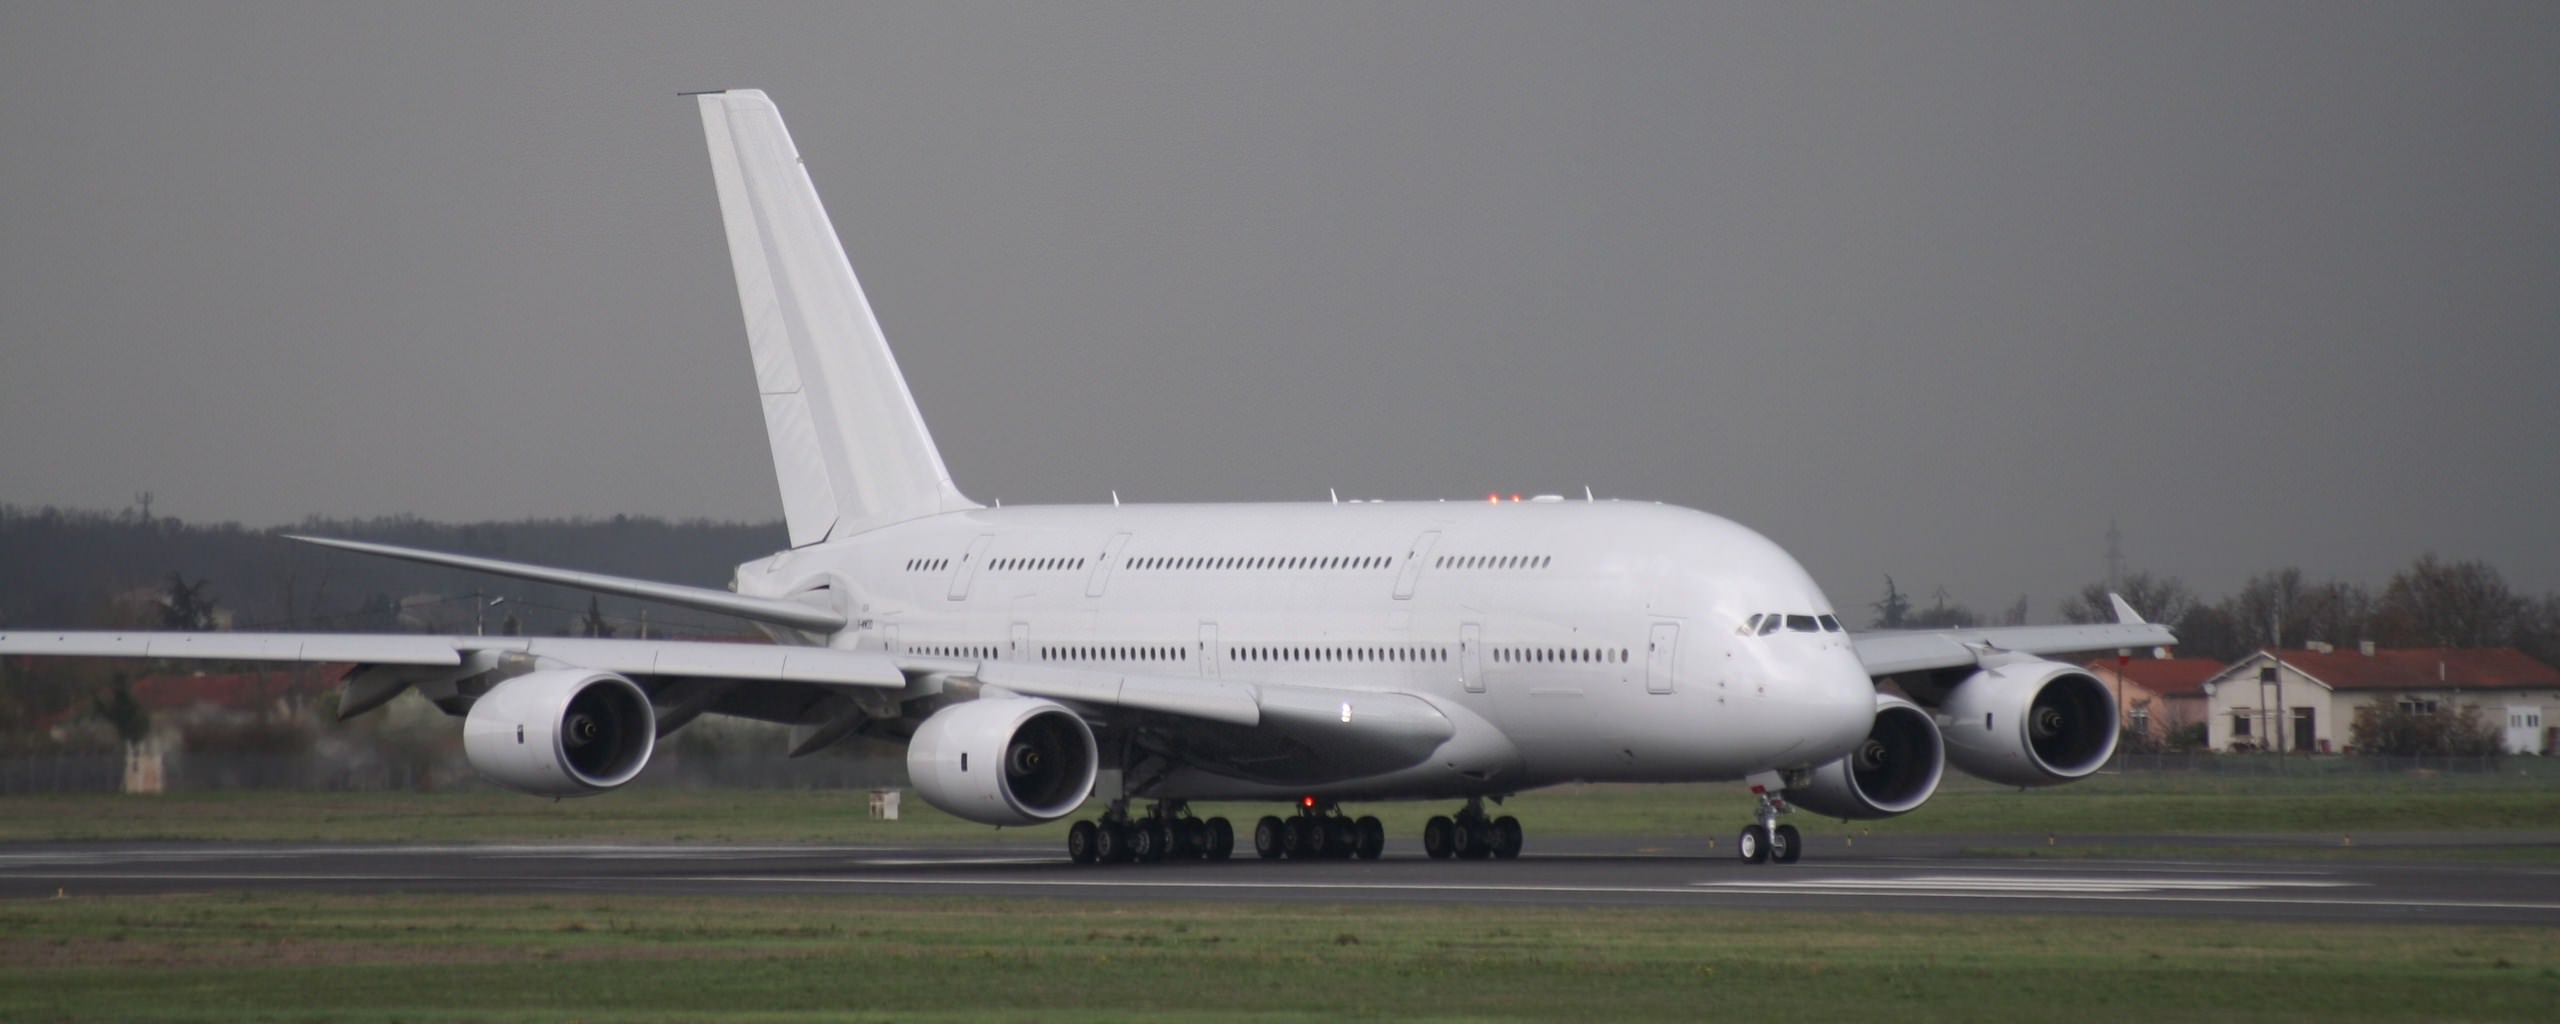 Avions de ligne A380 au roulage